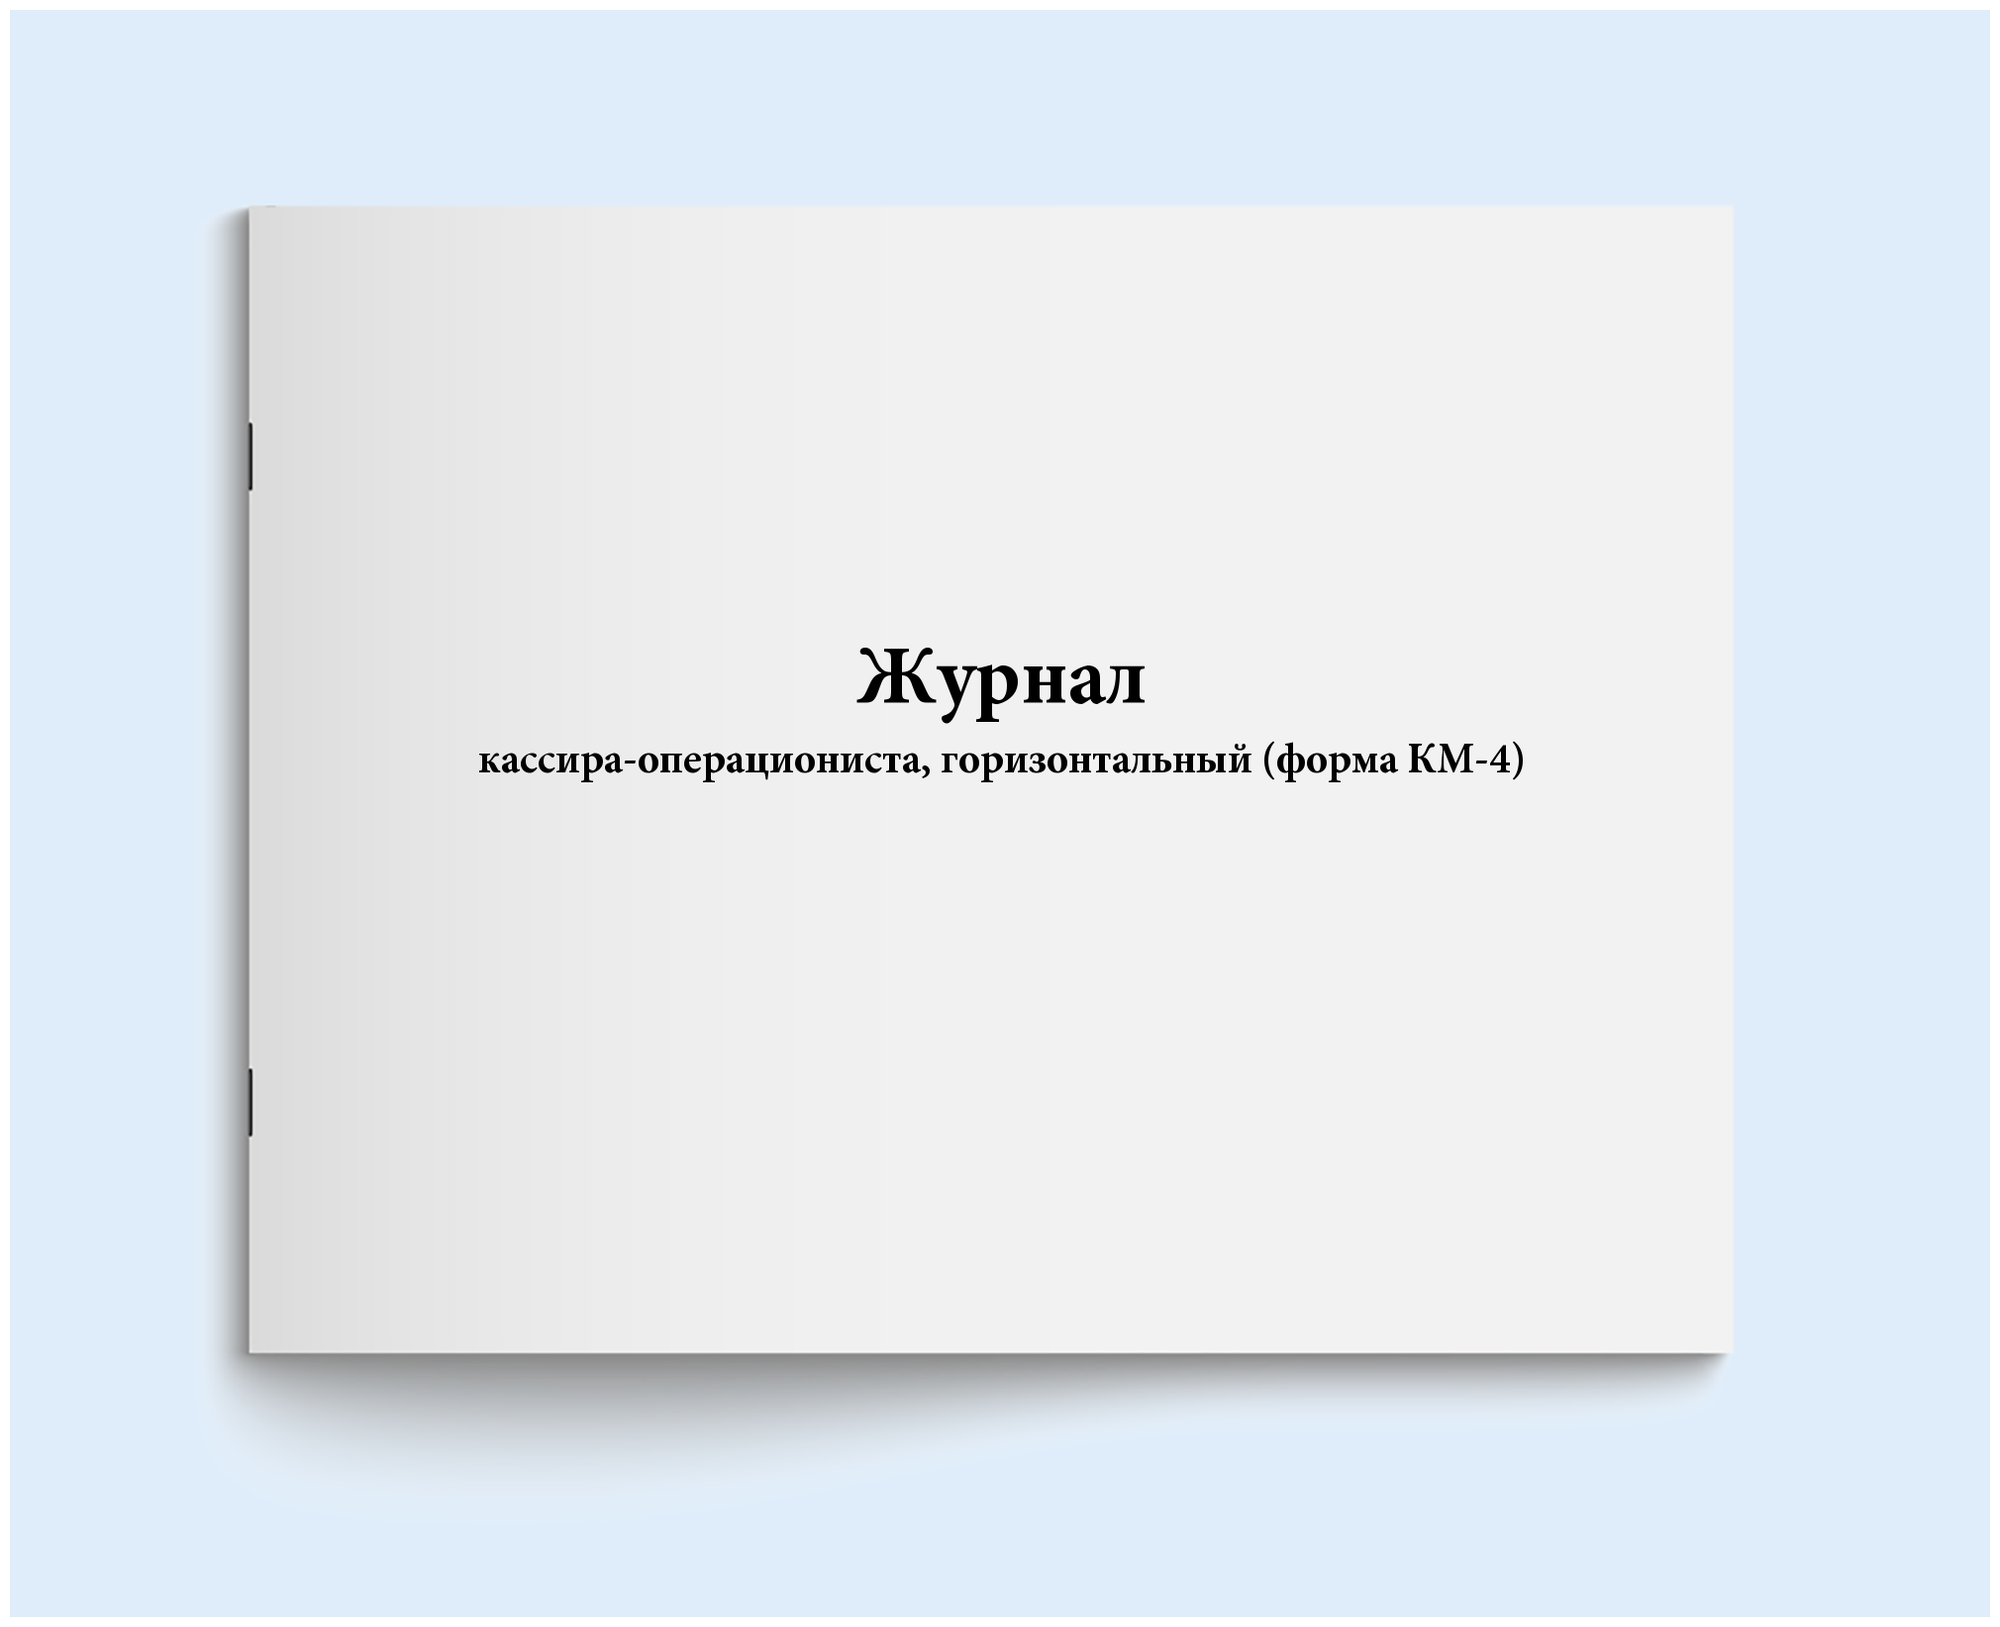 Журнал кассира-операциониста, горизонтальный (форма КМ-4). 60 страниц